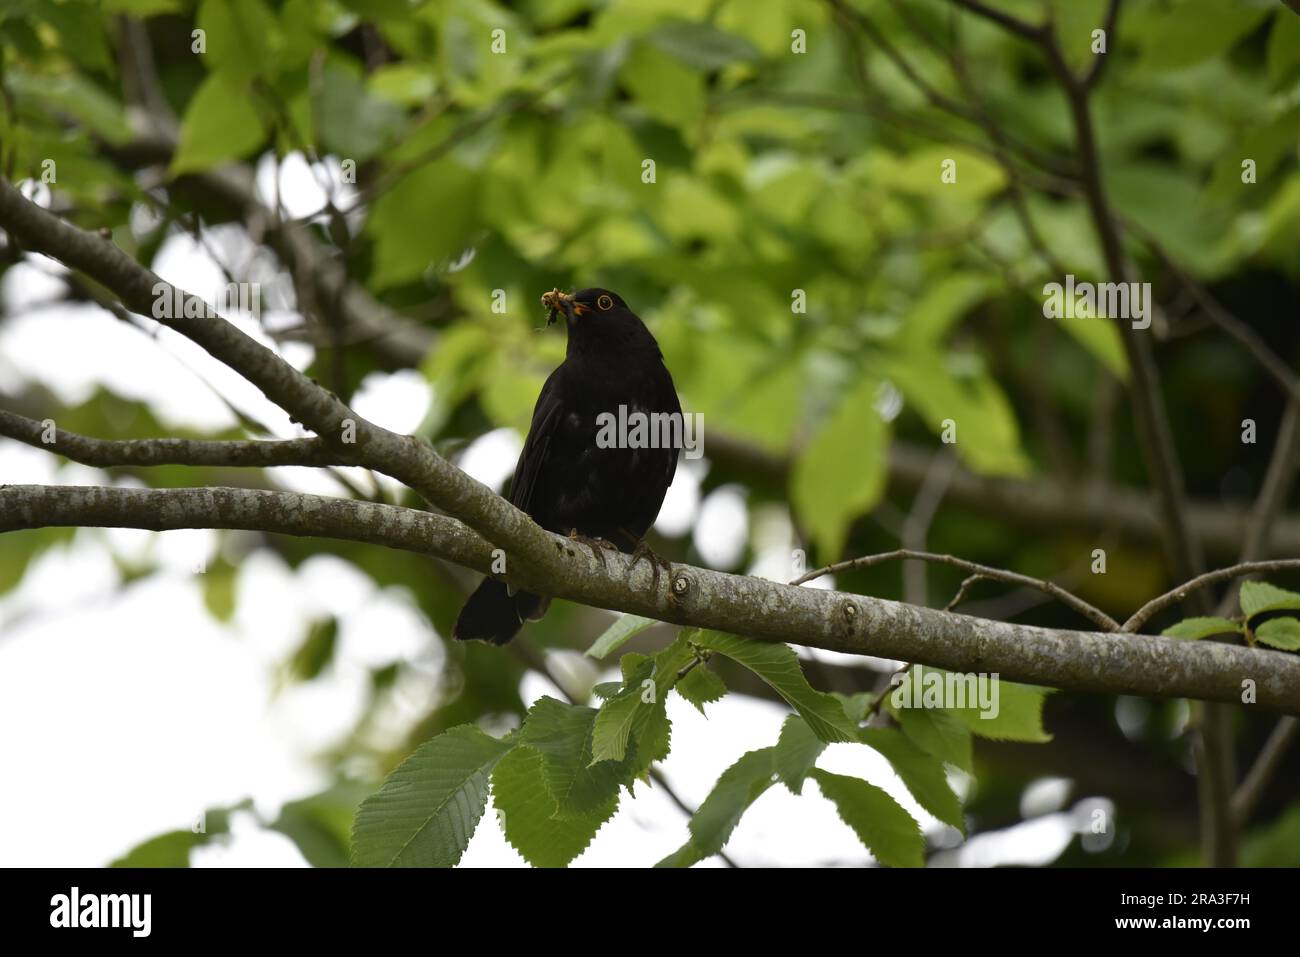 Male Common Blackbird (Turdus merula) arroccato su un ramo di albero, Head Turned to Left of Image, con Beak Full of Food, scattato nel Regno Unito a giugno Foto Stock